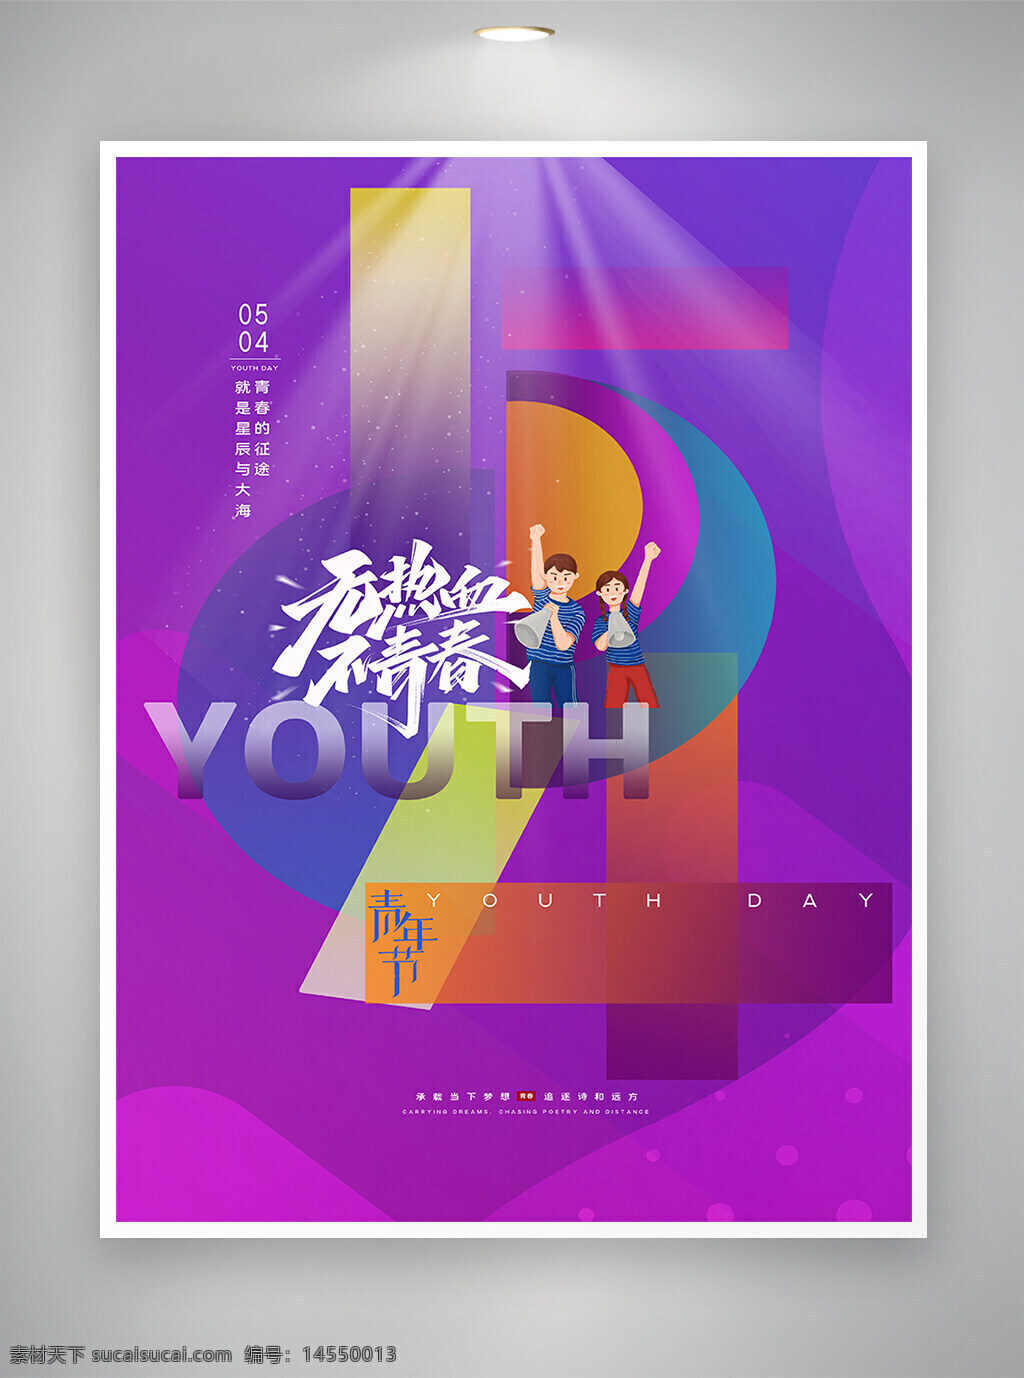 炫彩创意 创意海报 54 54青年节 54海报 青年节 青年节宣传 青年节海报 宣传海报 海报